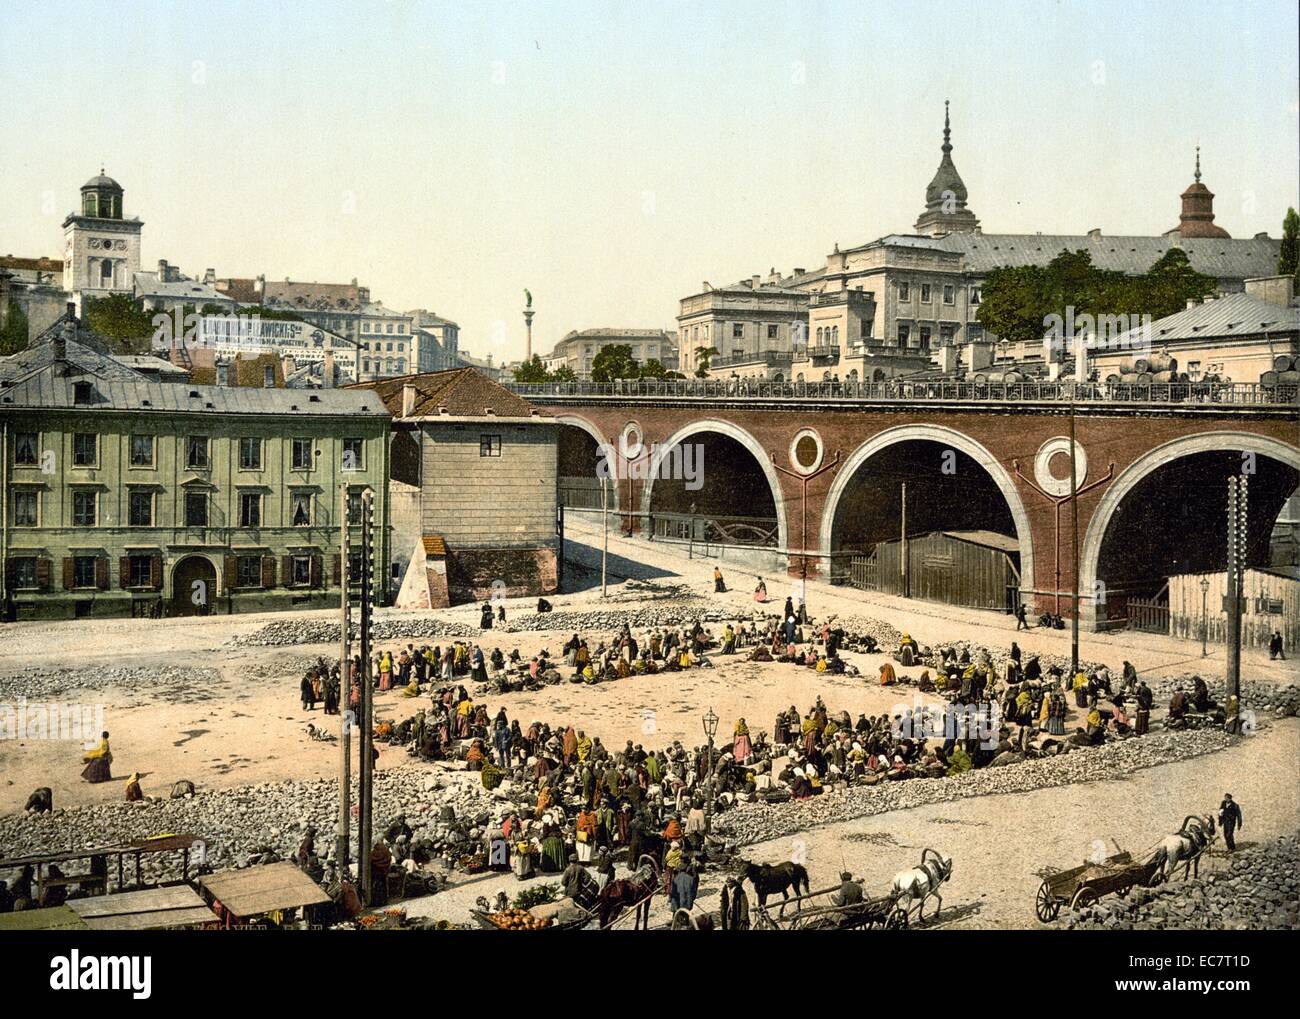 Stampa a colori di Zjazd Street, Varsavia, Russia. Varsavia è ora la capitale della Polonia, poiché è diventato un paese indipendente nel 1919. La foto è detto essere datata intorno al 1890-1900. Foto Stock